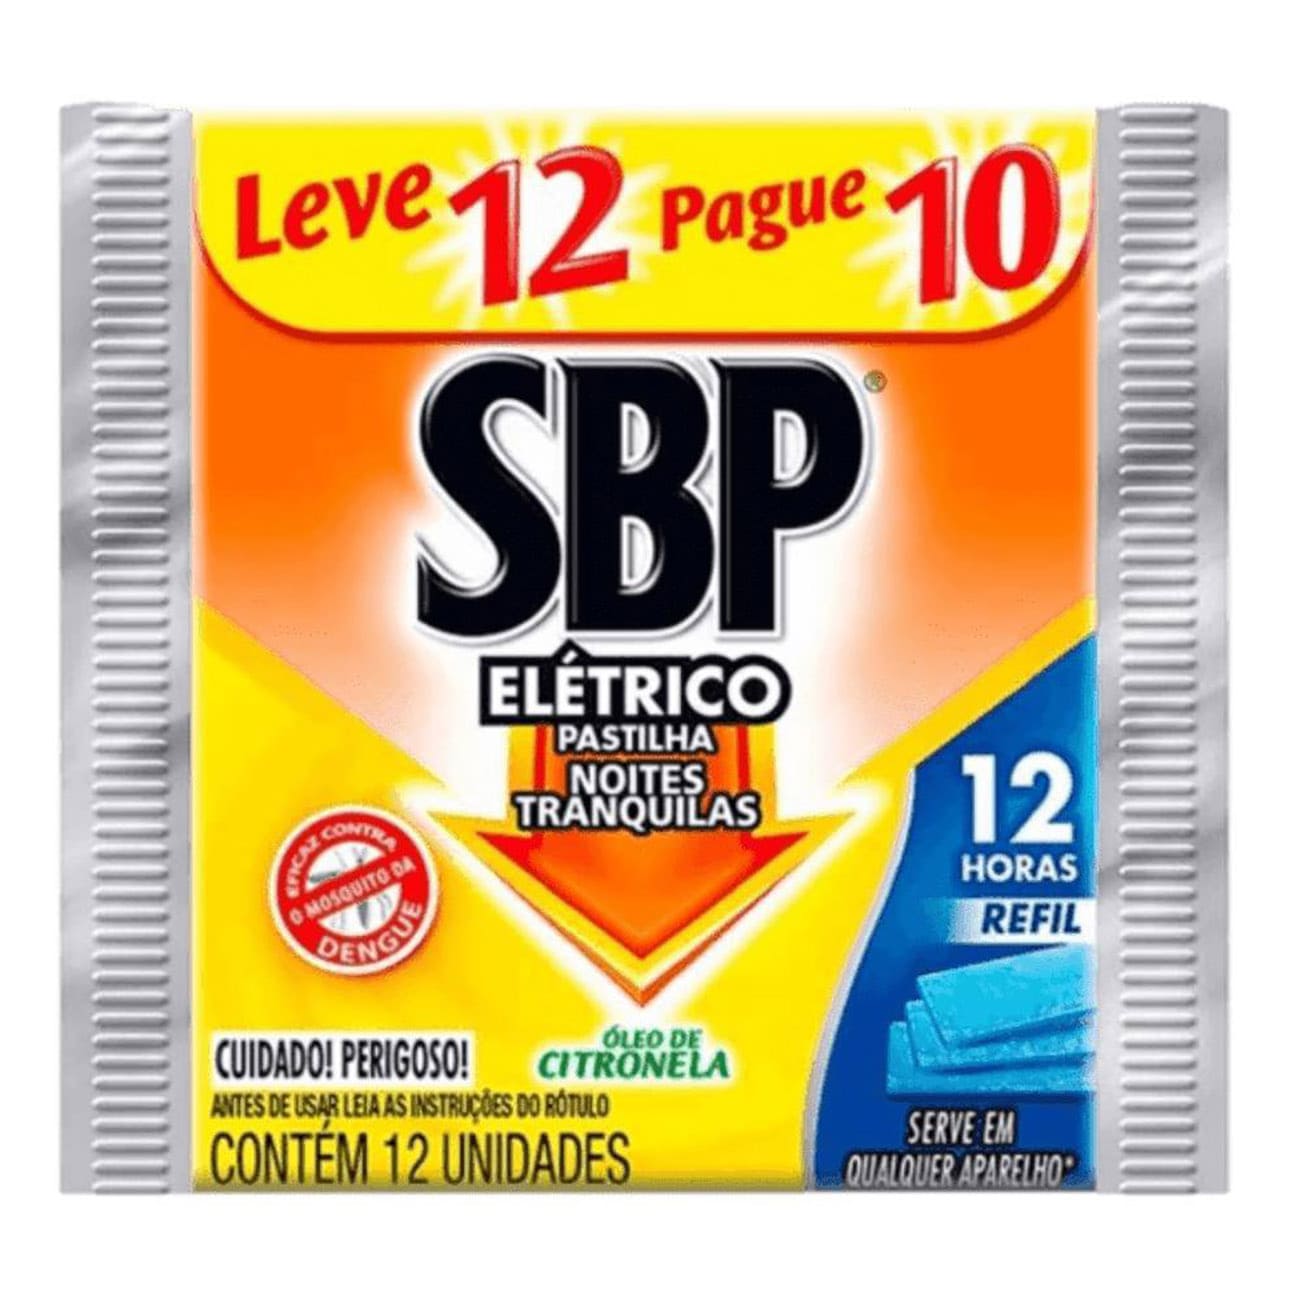 Repelente Eltrico Pastilha SBP Citronela Refil Leve 12 Pague 10 pastilhas